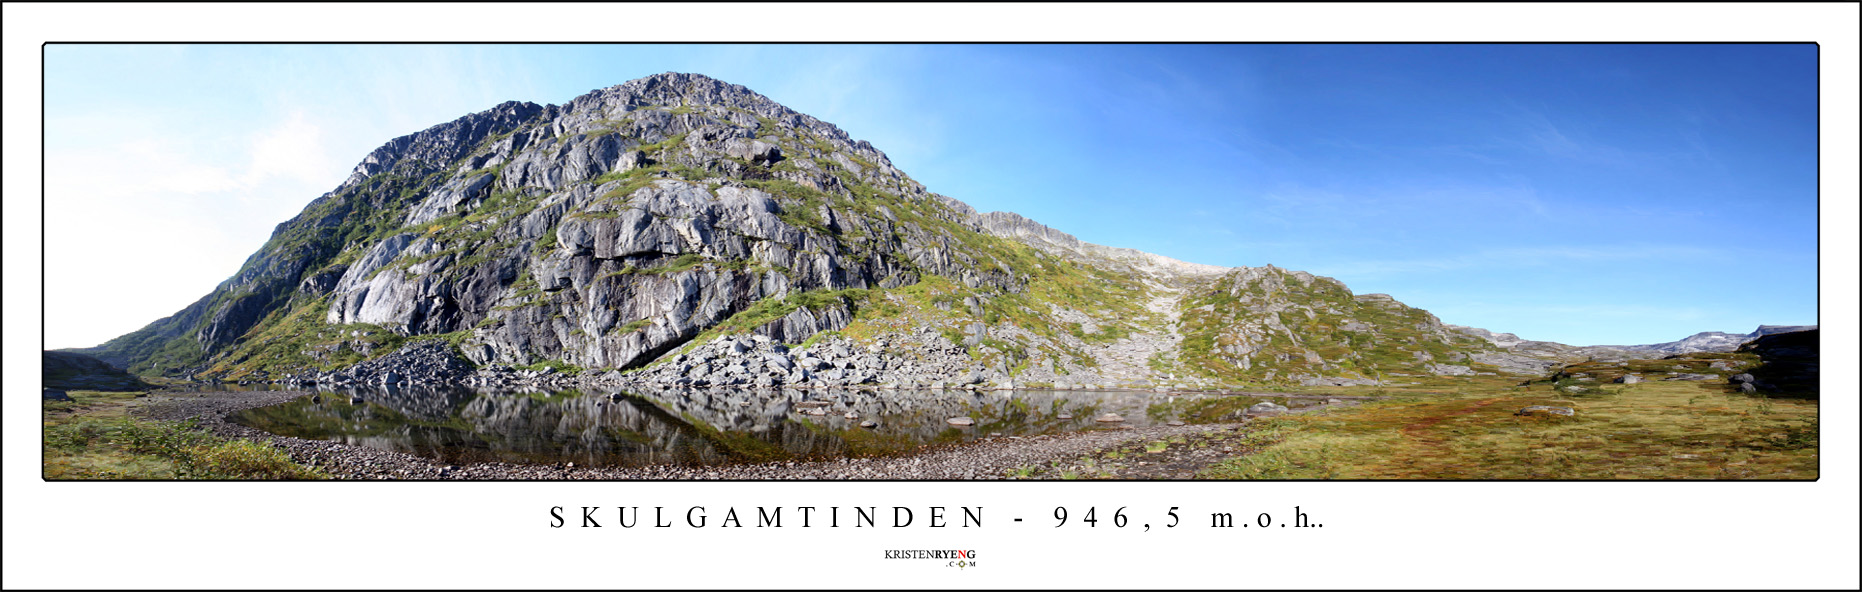 Panorama-Skulgamtinden3.jpg - Skulgamtinden - 946,5 moh. (OBS! Bildet viser utsikt fra dalen opp mot Skulgamtinden - ikke fjellet).